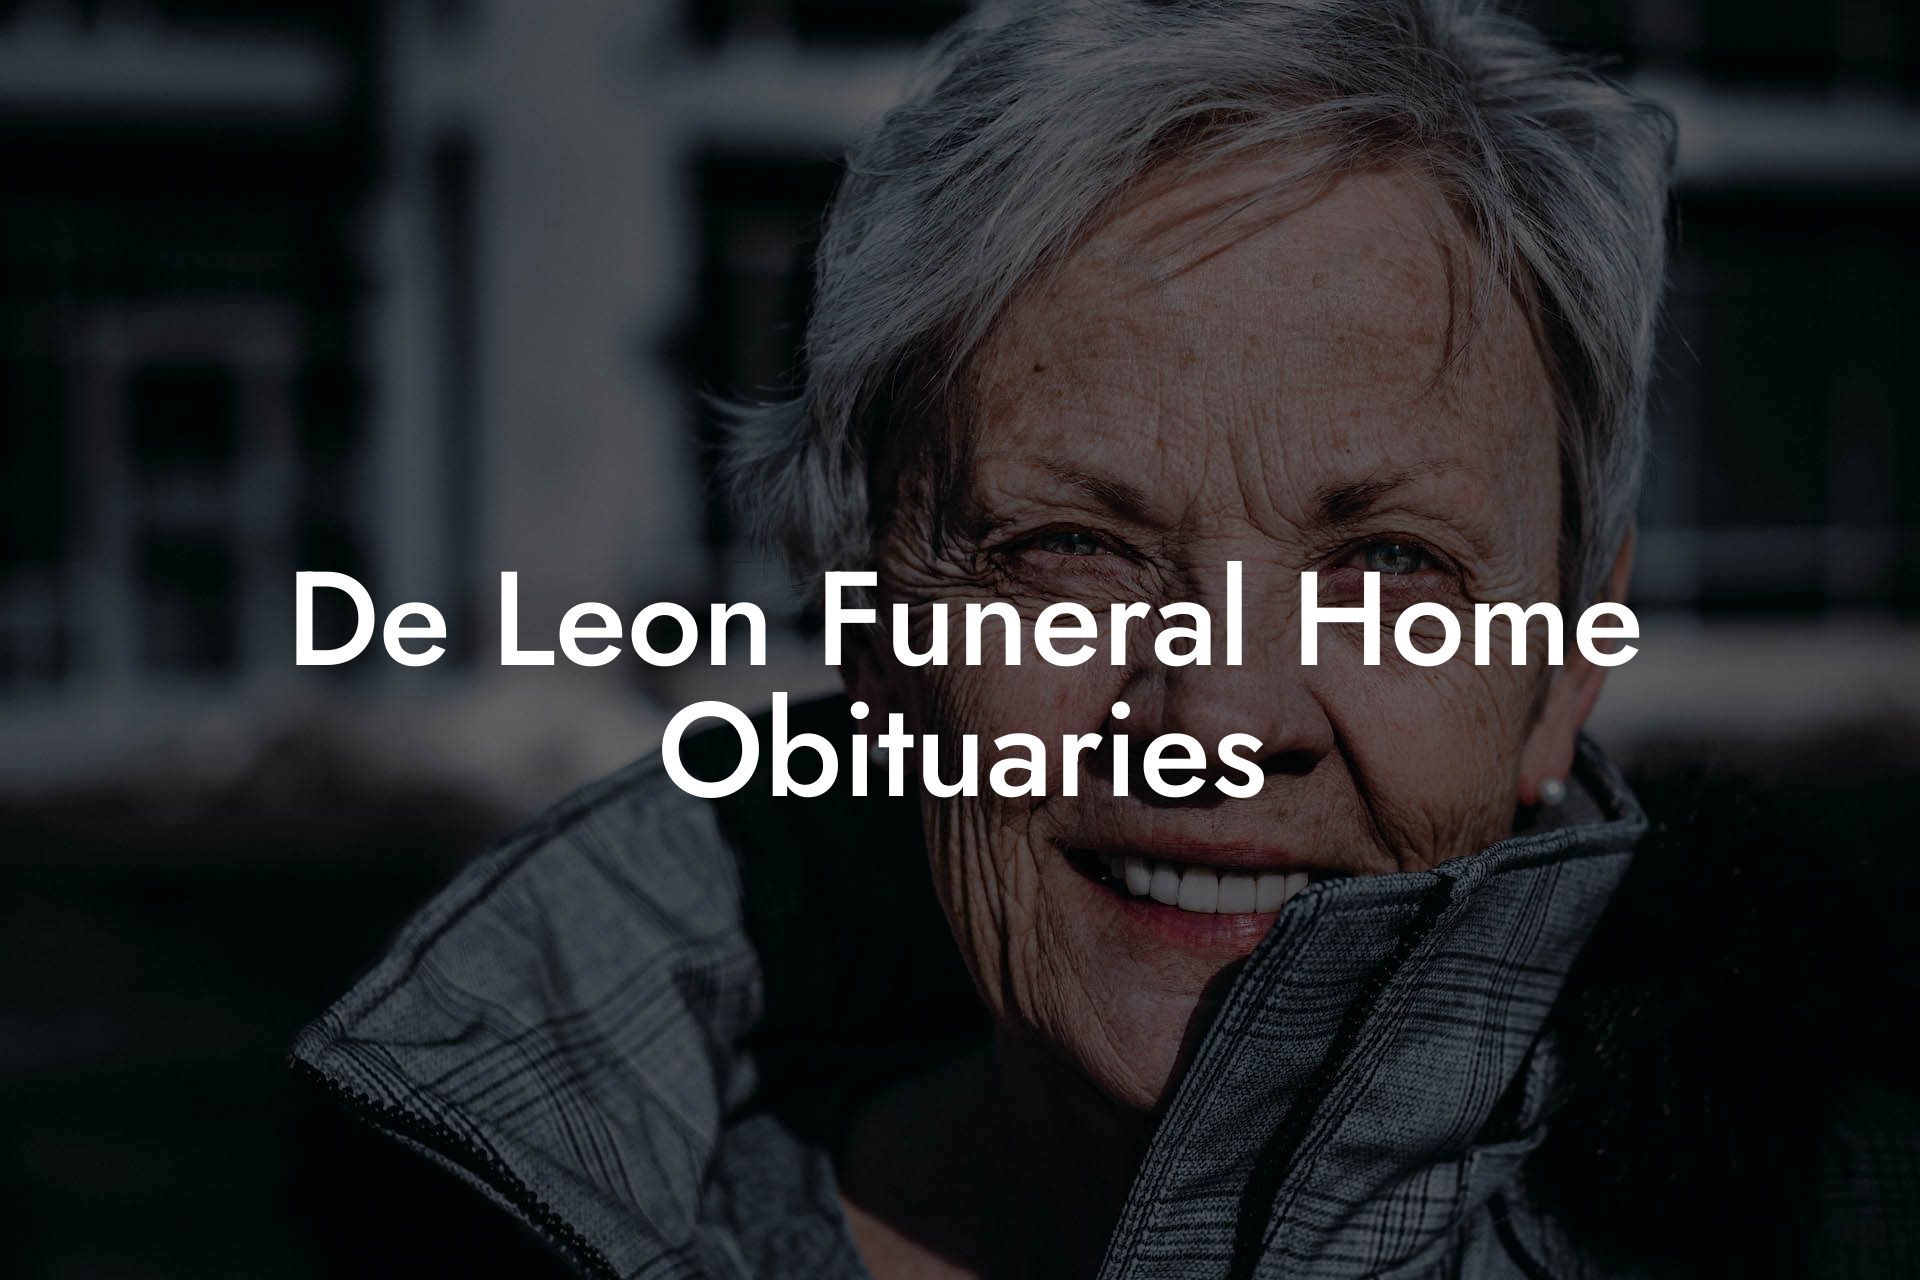 De Leon Funeral Home Obituaries